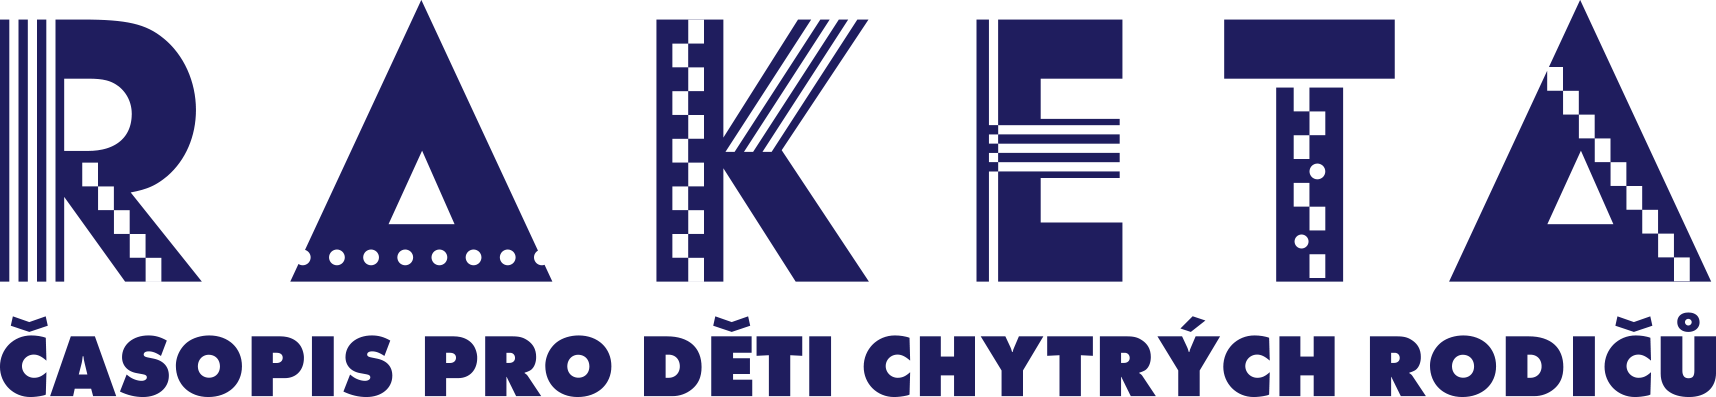 Raketa logo